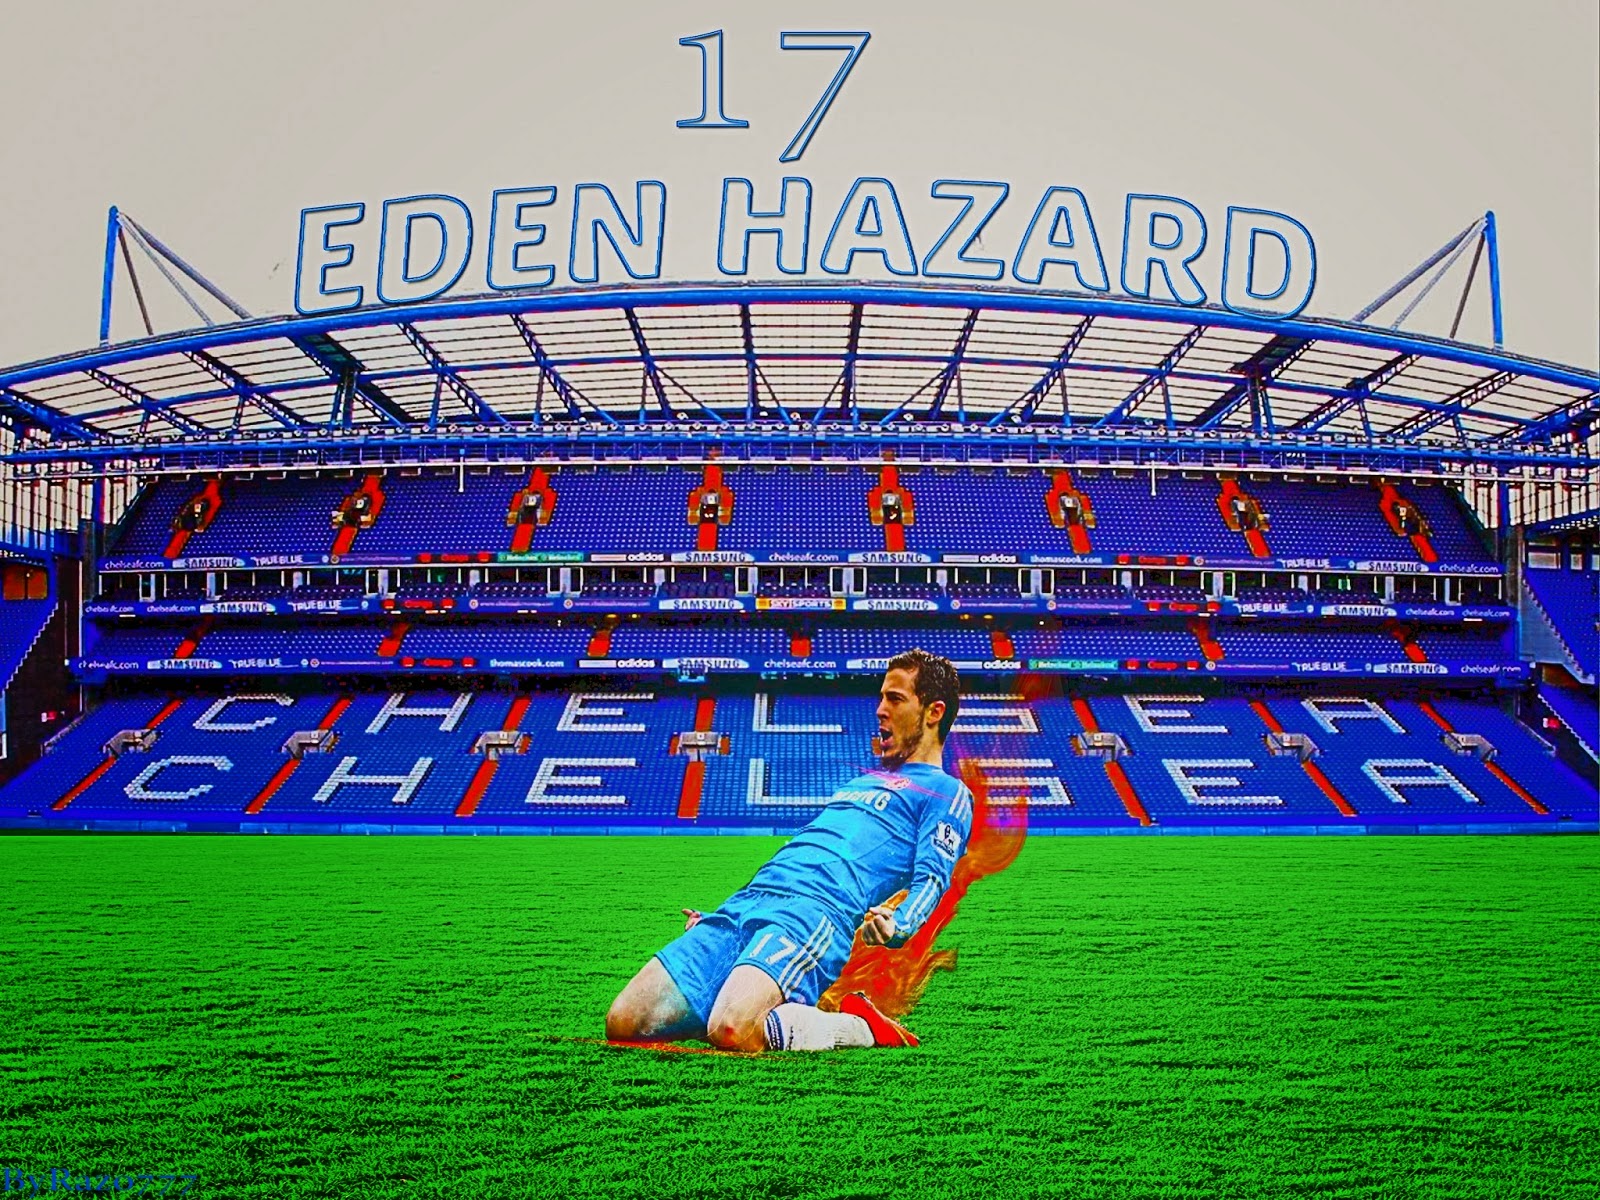 Eden Hazard Chelsea Wallpaper HD Click Image To